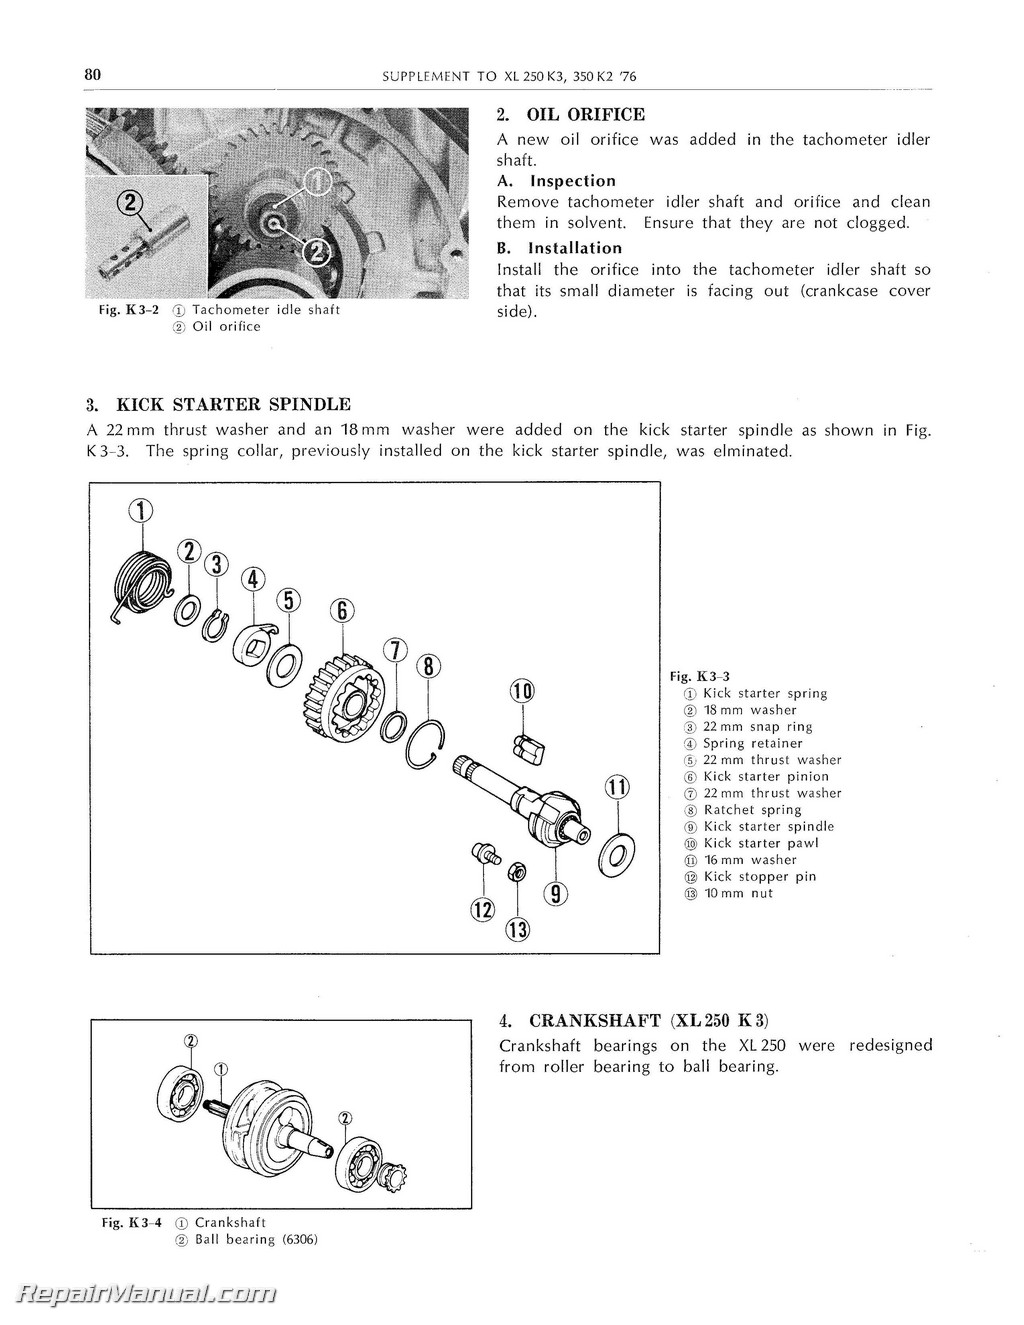 1972 Honda motorcycle service manual #3